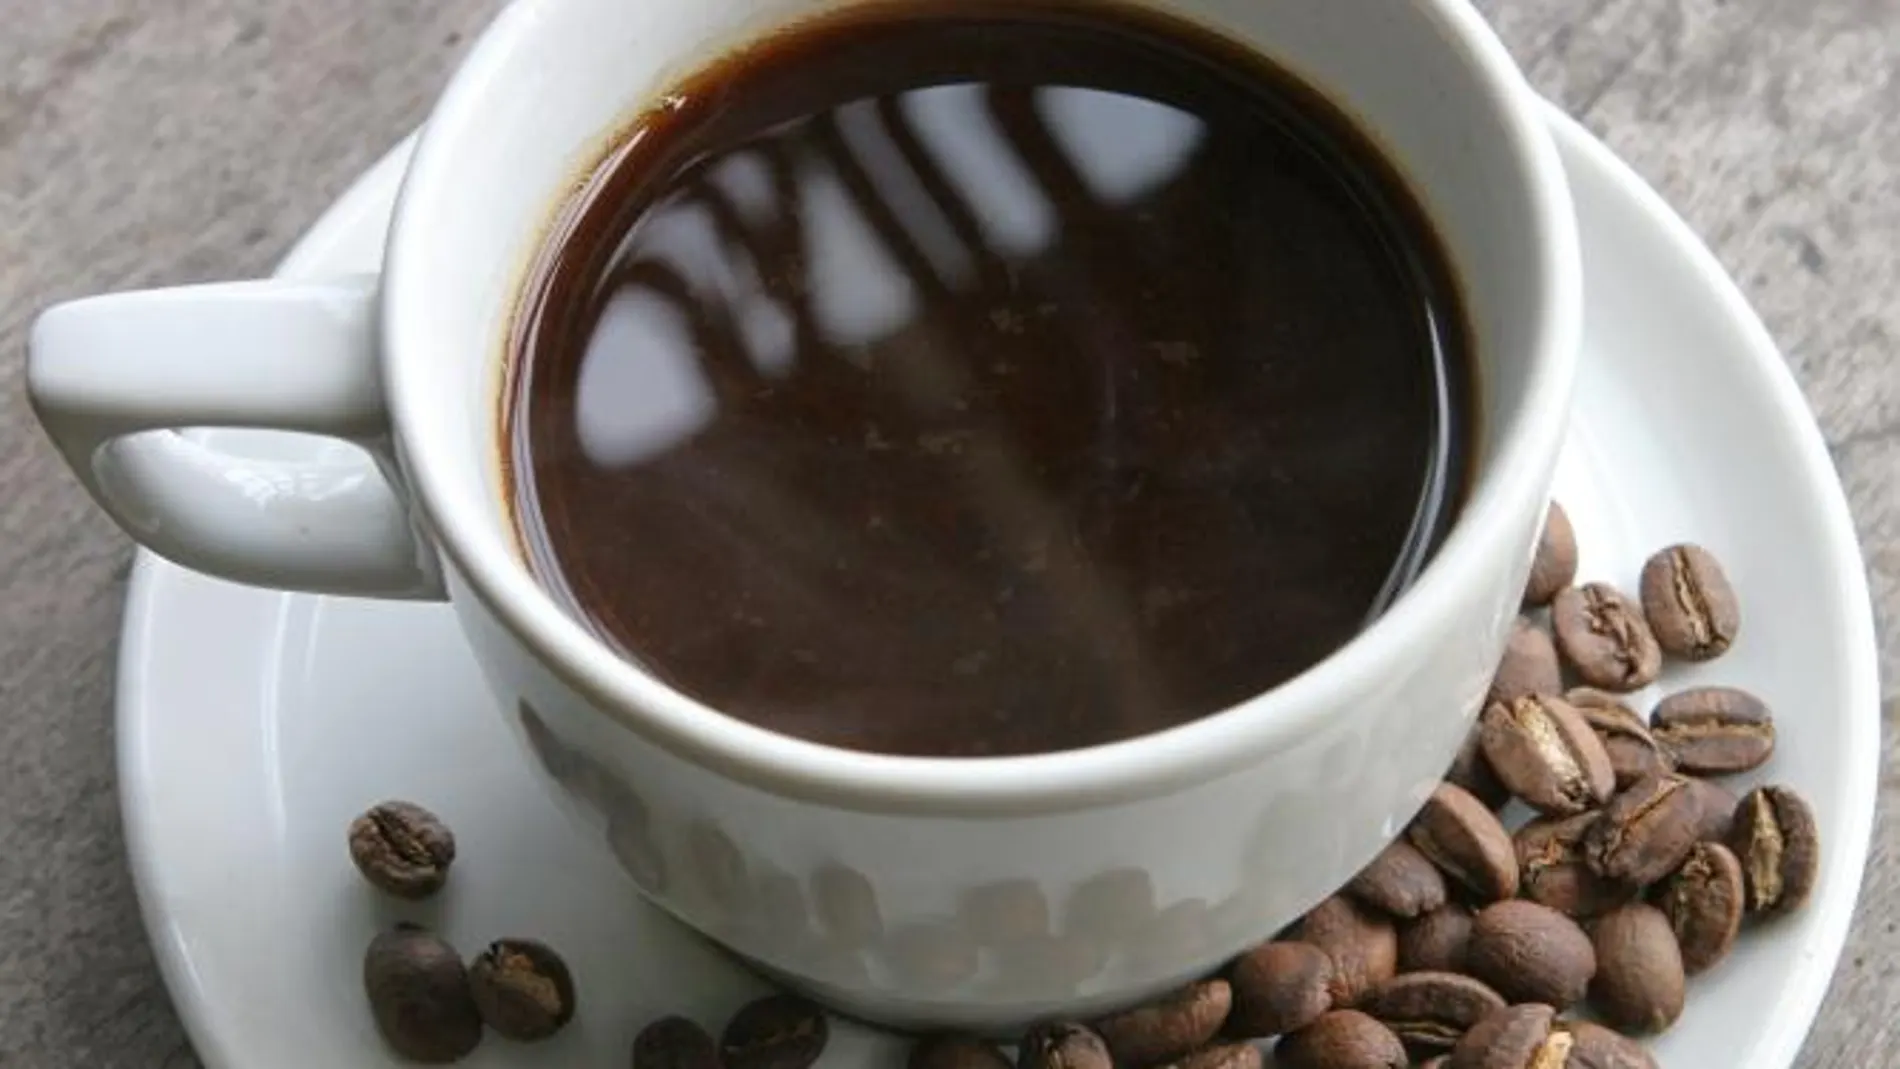 La complejidad de descafeinar café no reside en sacar la cafeina, sino dejar el resto igual